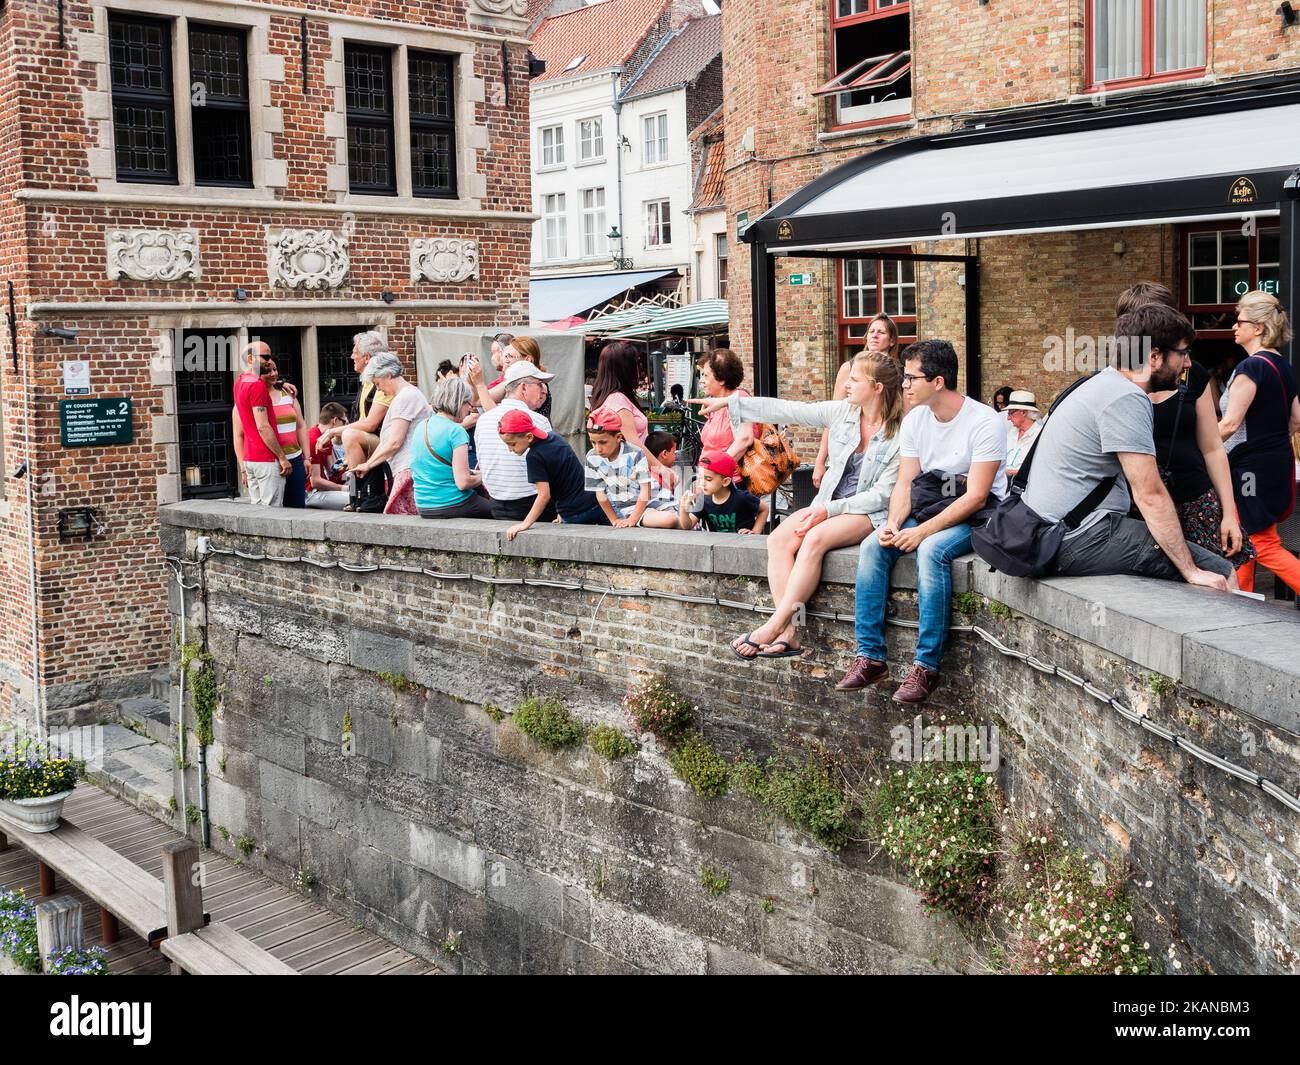 Bruges, Belgio, il 27th maggio 2017. Durante uno dei giorni più caldi dell'anno, Bruges è stata la destinazione scelta da migliaia di turisti provenienti da tutto il mondo. Questa è la capitale e la città più grande della provincia delle Fiandre Occidentali nella regione fiamminga del Belgio, nel nord-ovest del paese. Essendo Bruges un'enorme destinazione turistica, i turisti hanno molte scelte per godersi la città, come escursioni in carrozza trainata da cavalli, tour dei canali in barca o semplicemente passeggiate nel centro storico della città. (Foto di Romy Arroyo Fernandez/NurPhoto) *** Please use Credit from Credit Field *** Foto Stock